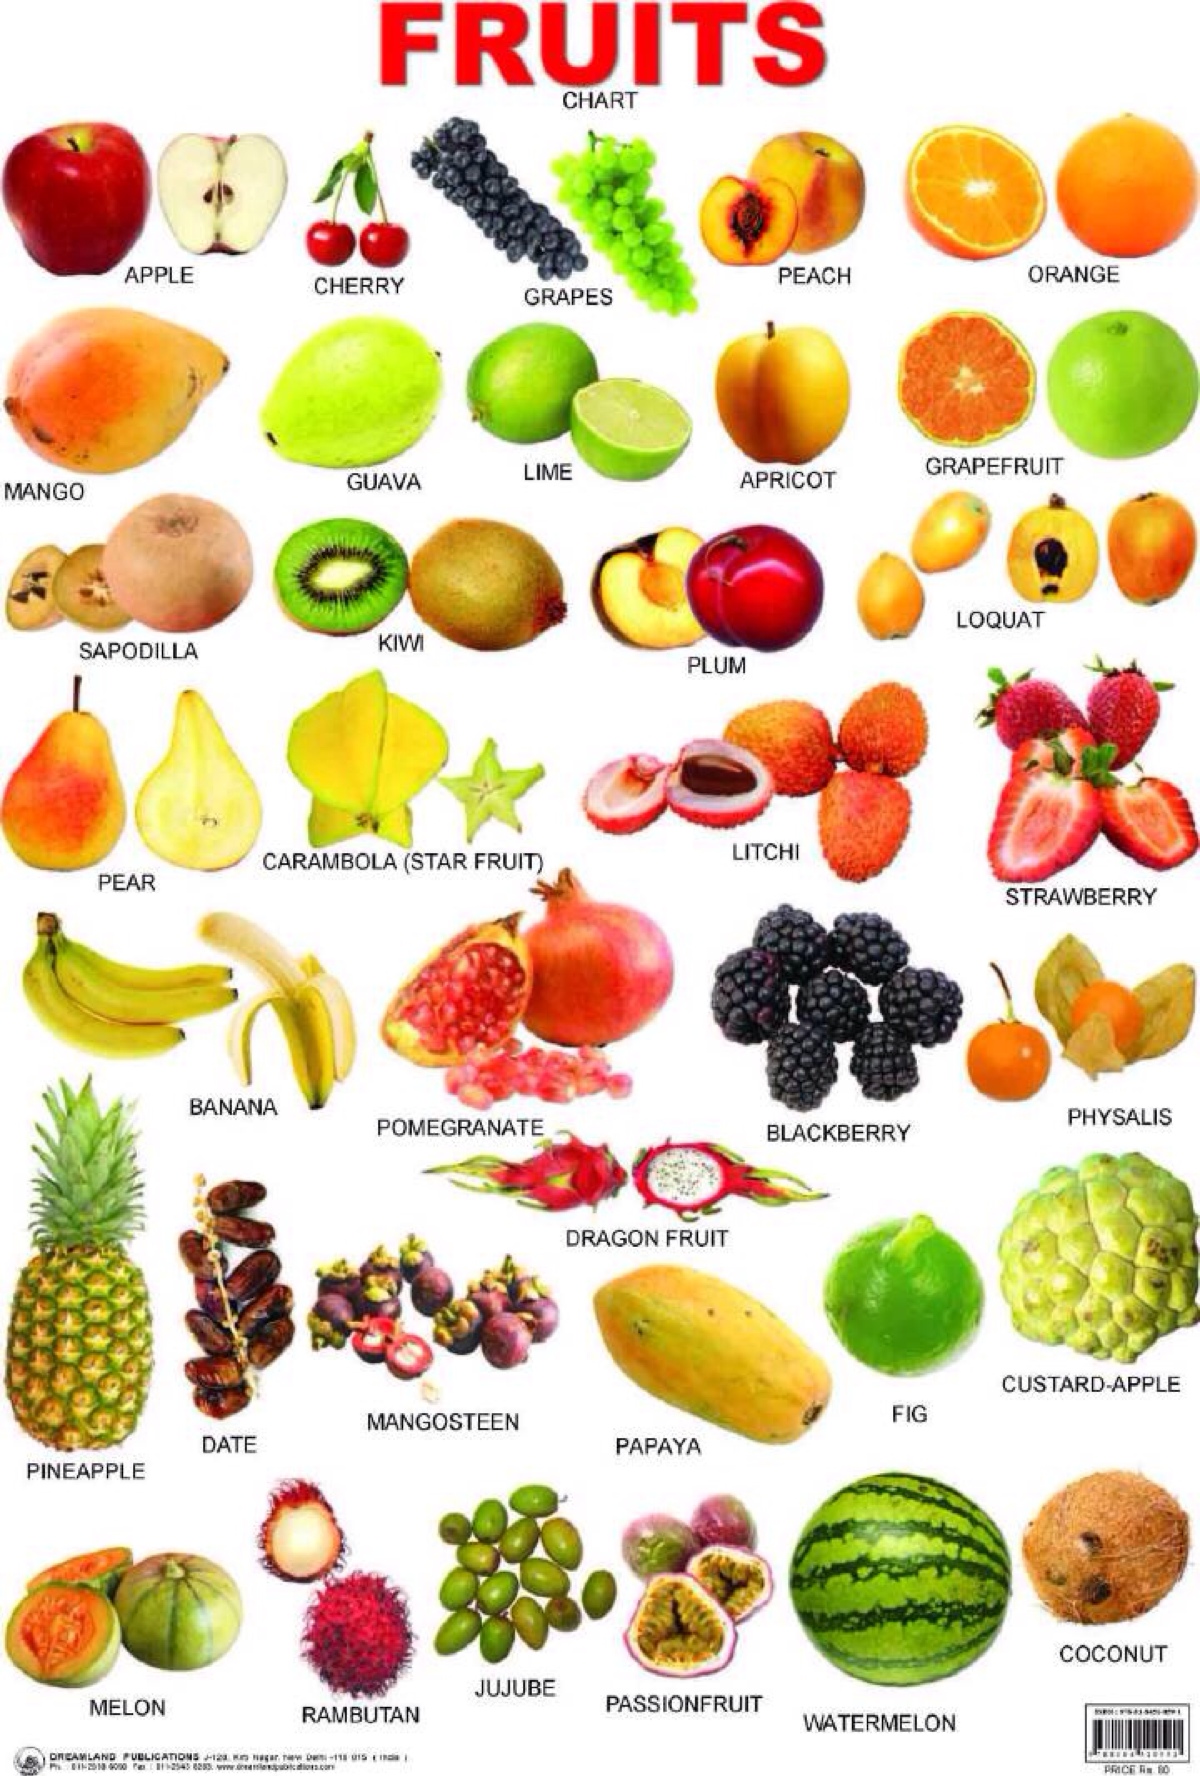 墨洋亲子英语丨水果对对碰 - Fruit Themed Bingo-搜狐